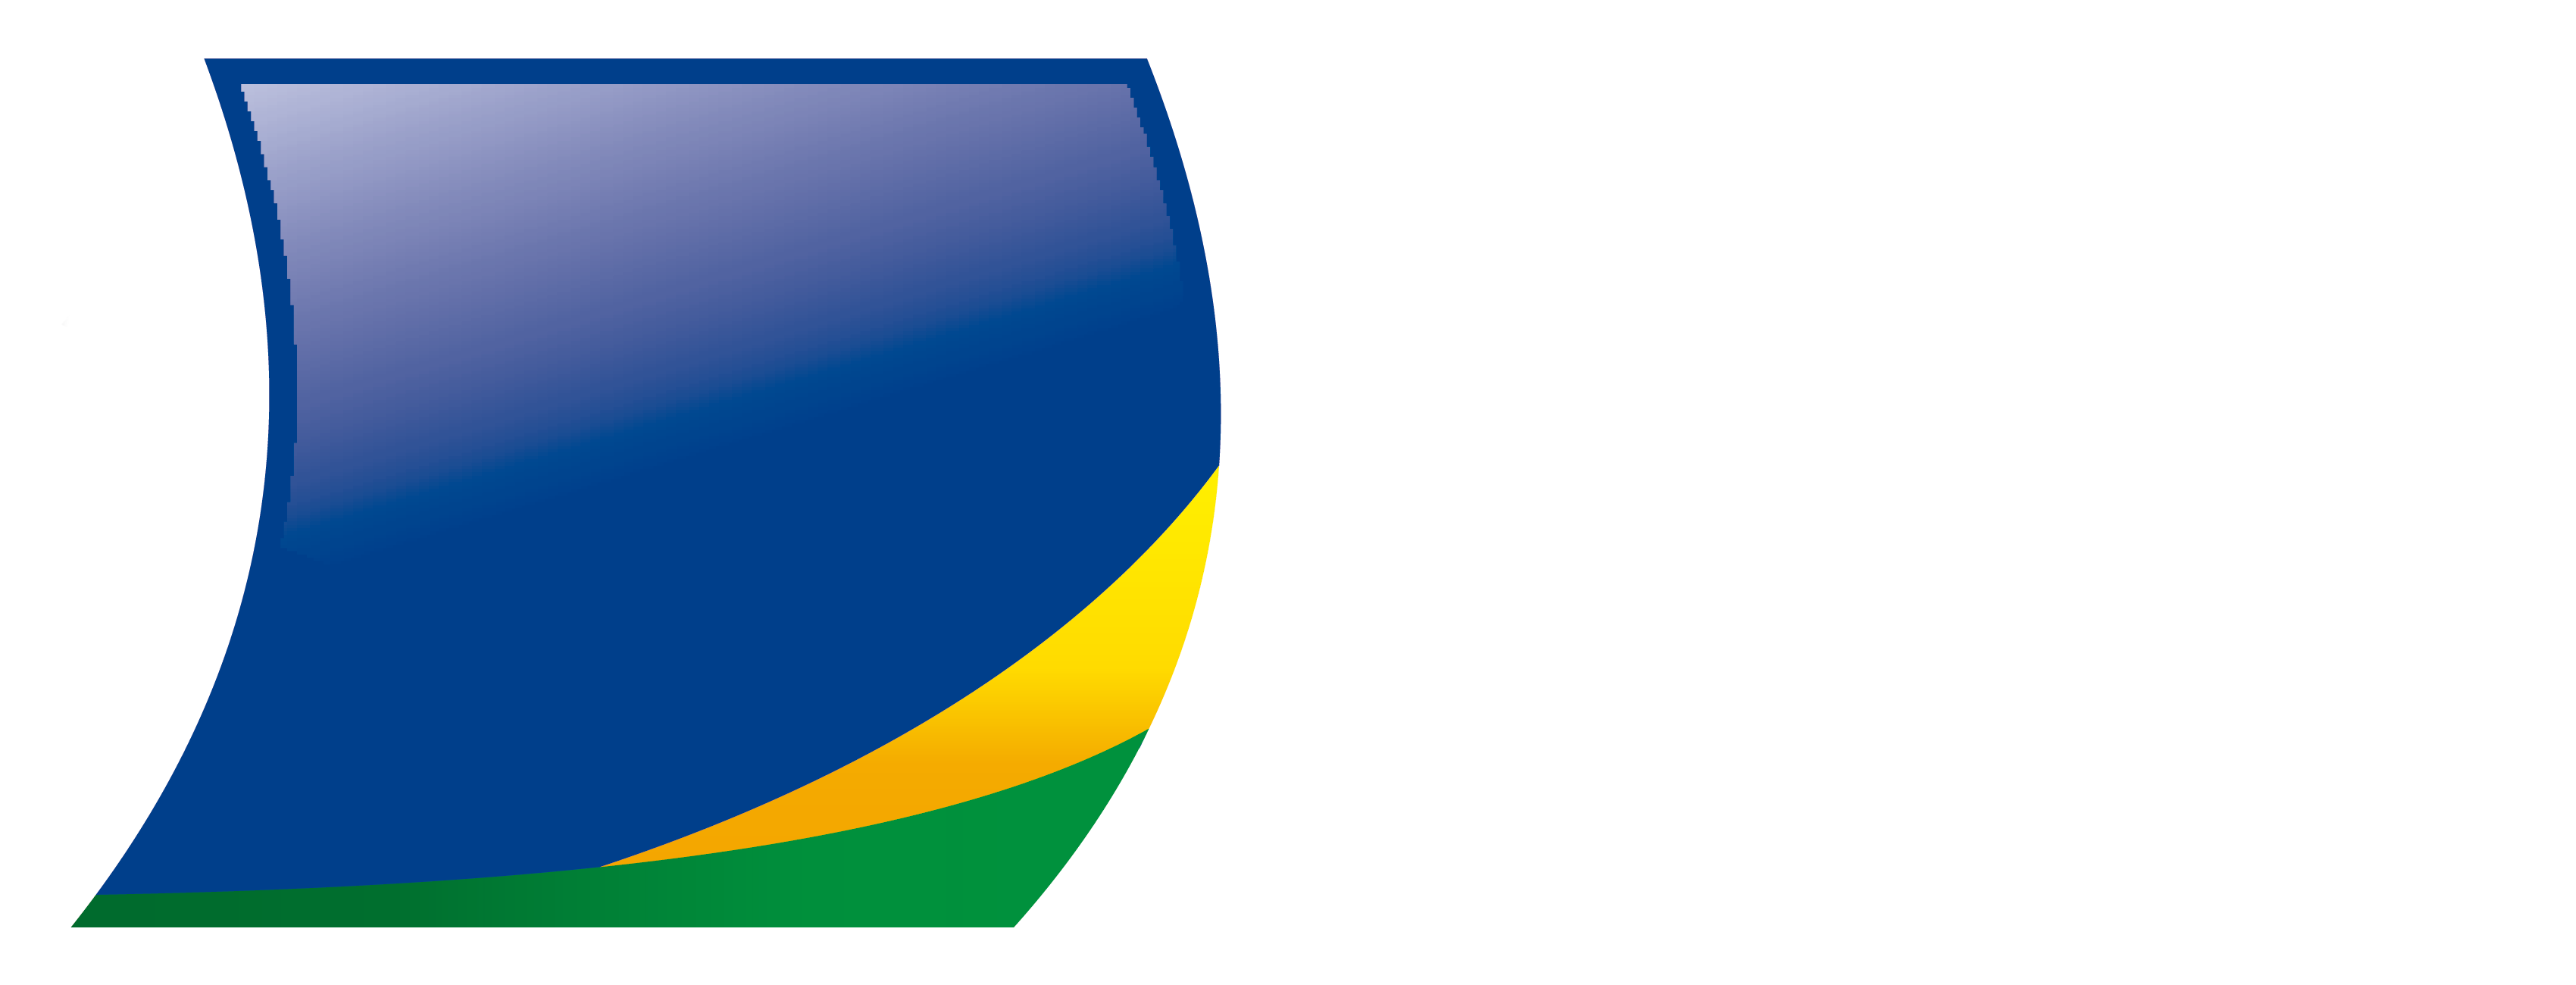 CDL Colatina - Contorno